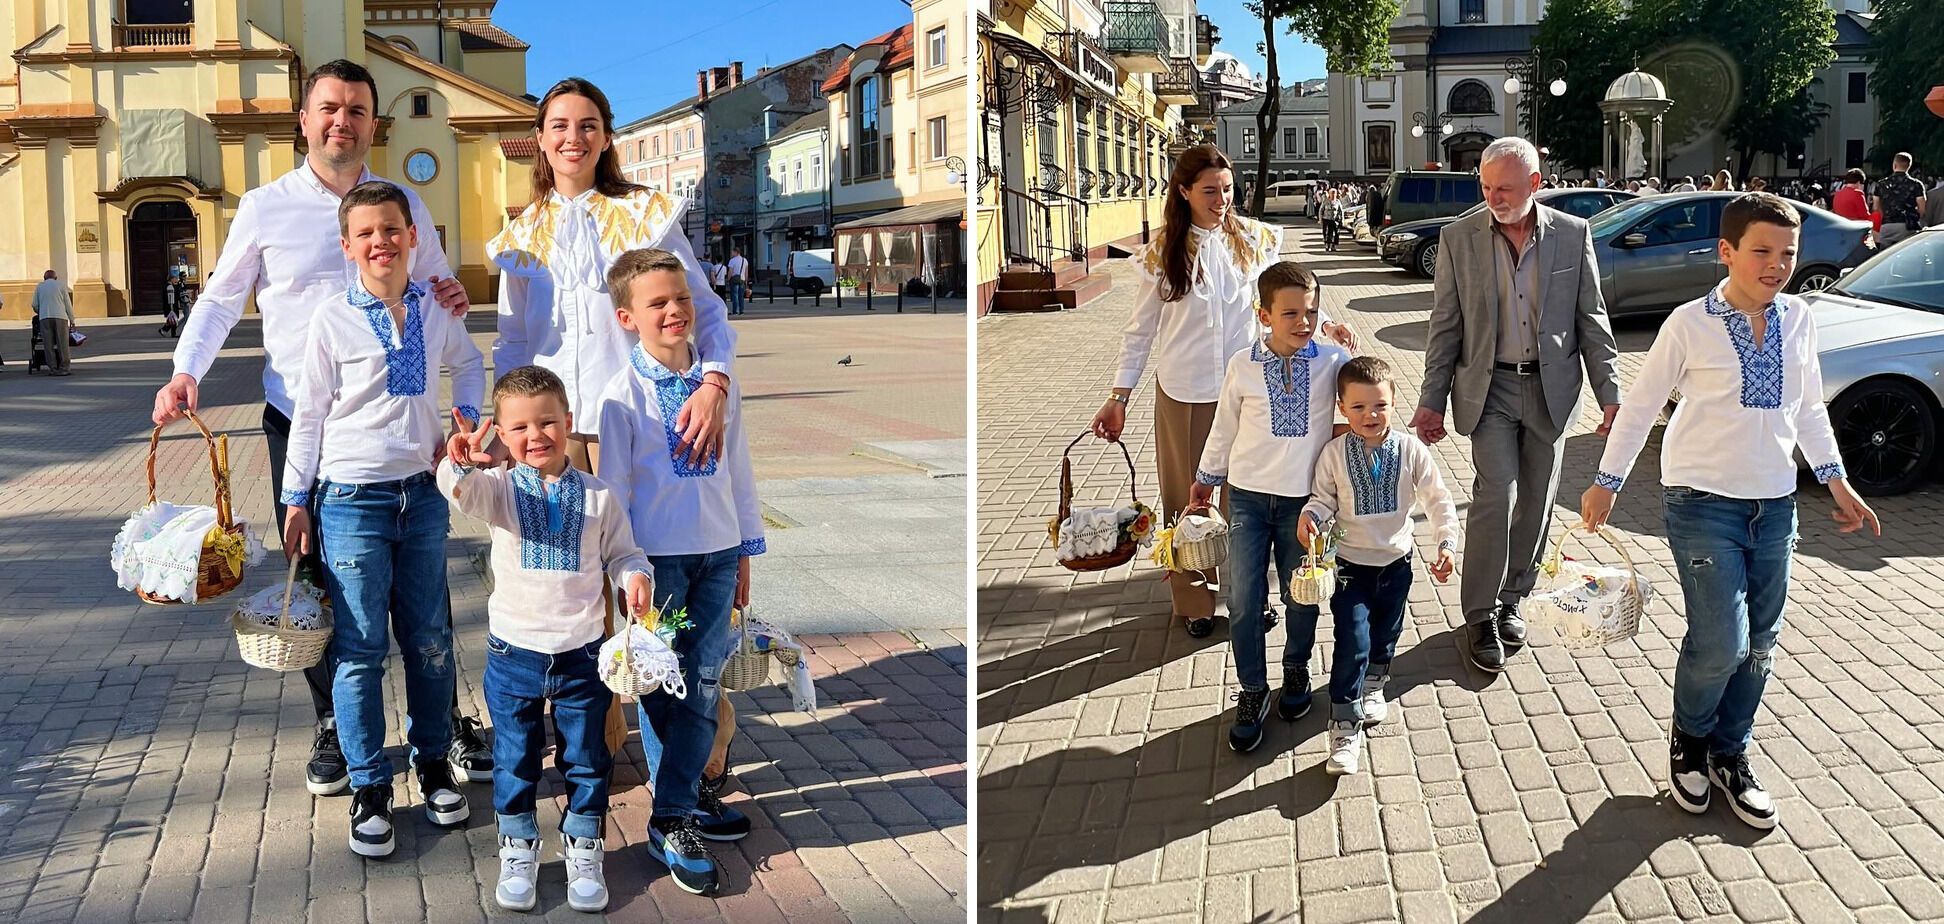 "Це свято про перемогу". Українські зірки показали свої образи на Великдень: більшість у вишиванках